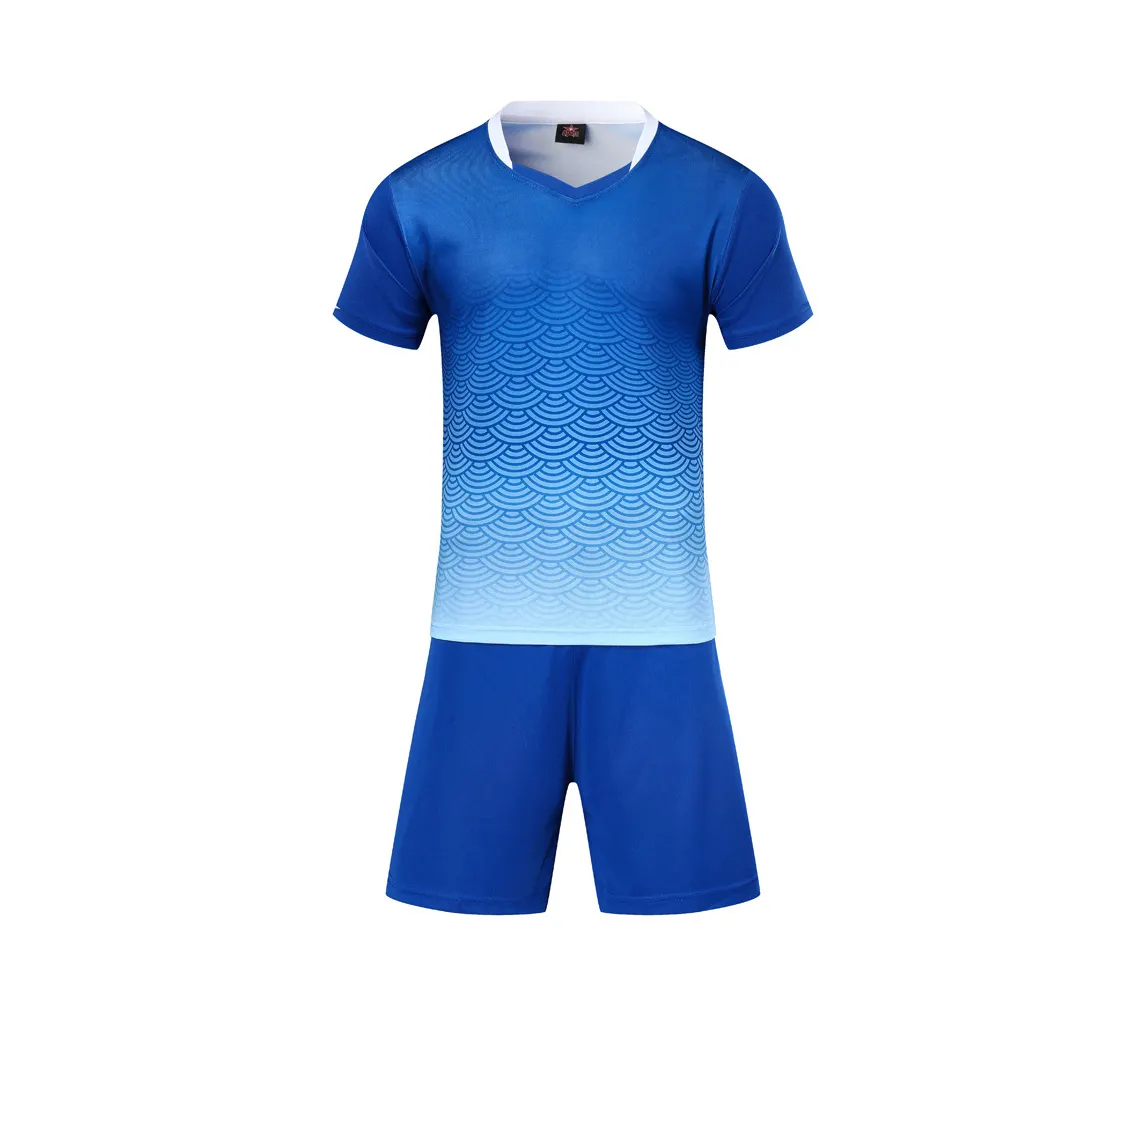 Cheap Short Sleeve Professional Shirt Uniform Team Soccer Football Jerseys